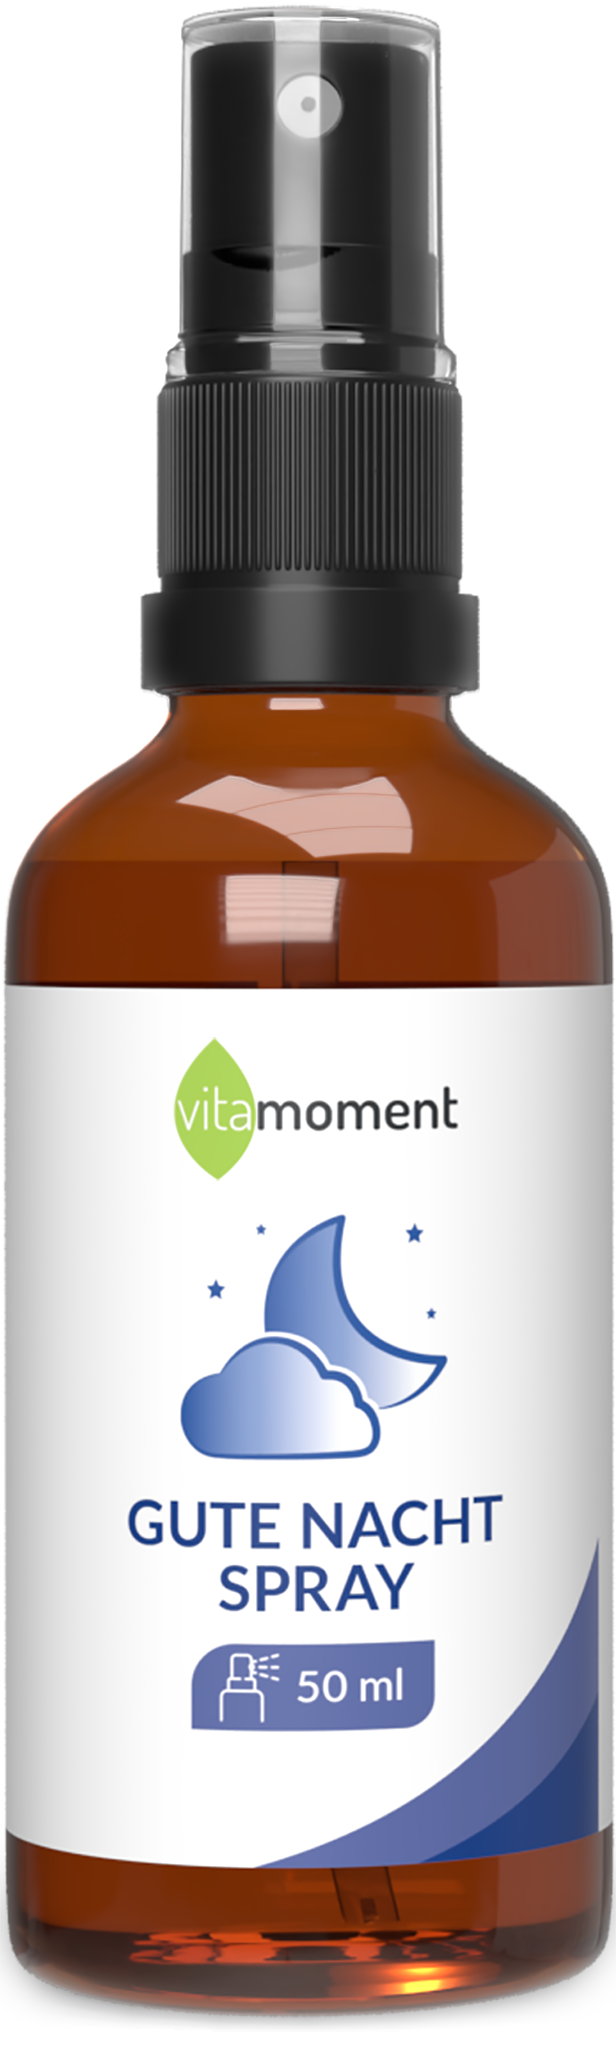 Gute Nacht Spray - 1 Flasche - VitaMoment Produkt